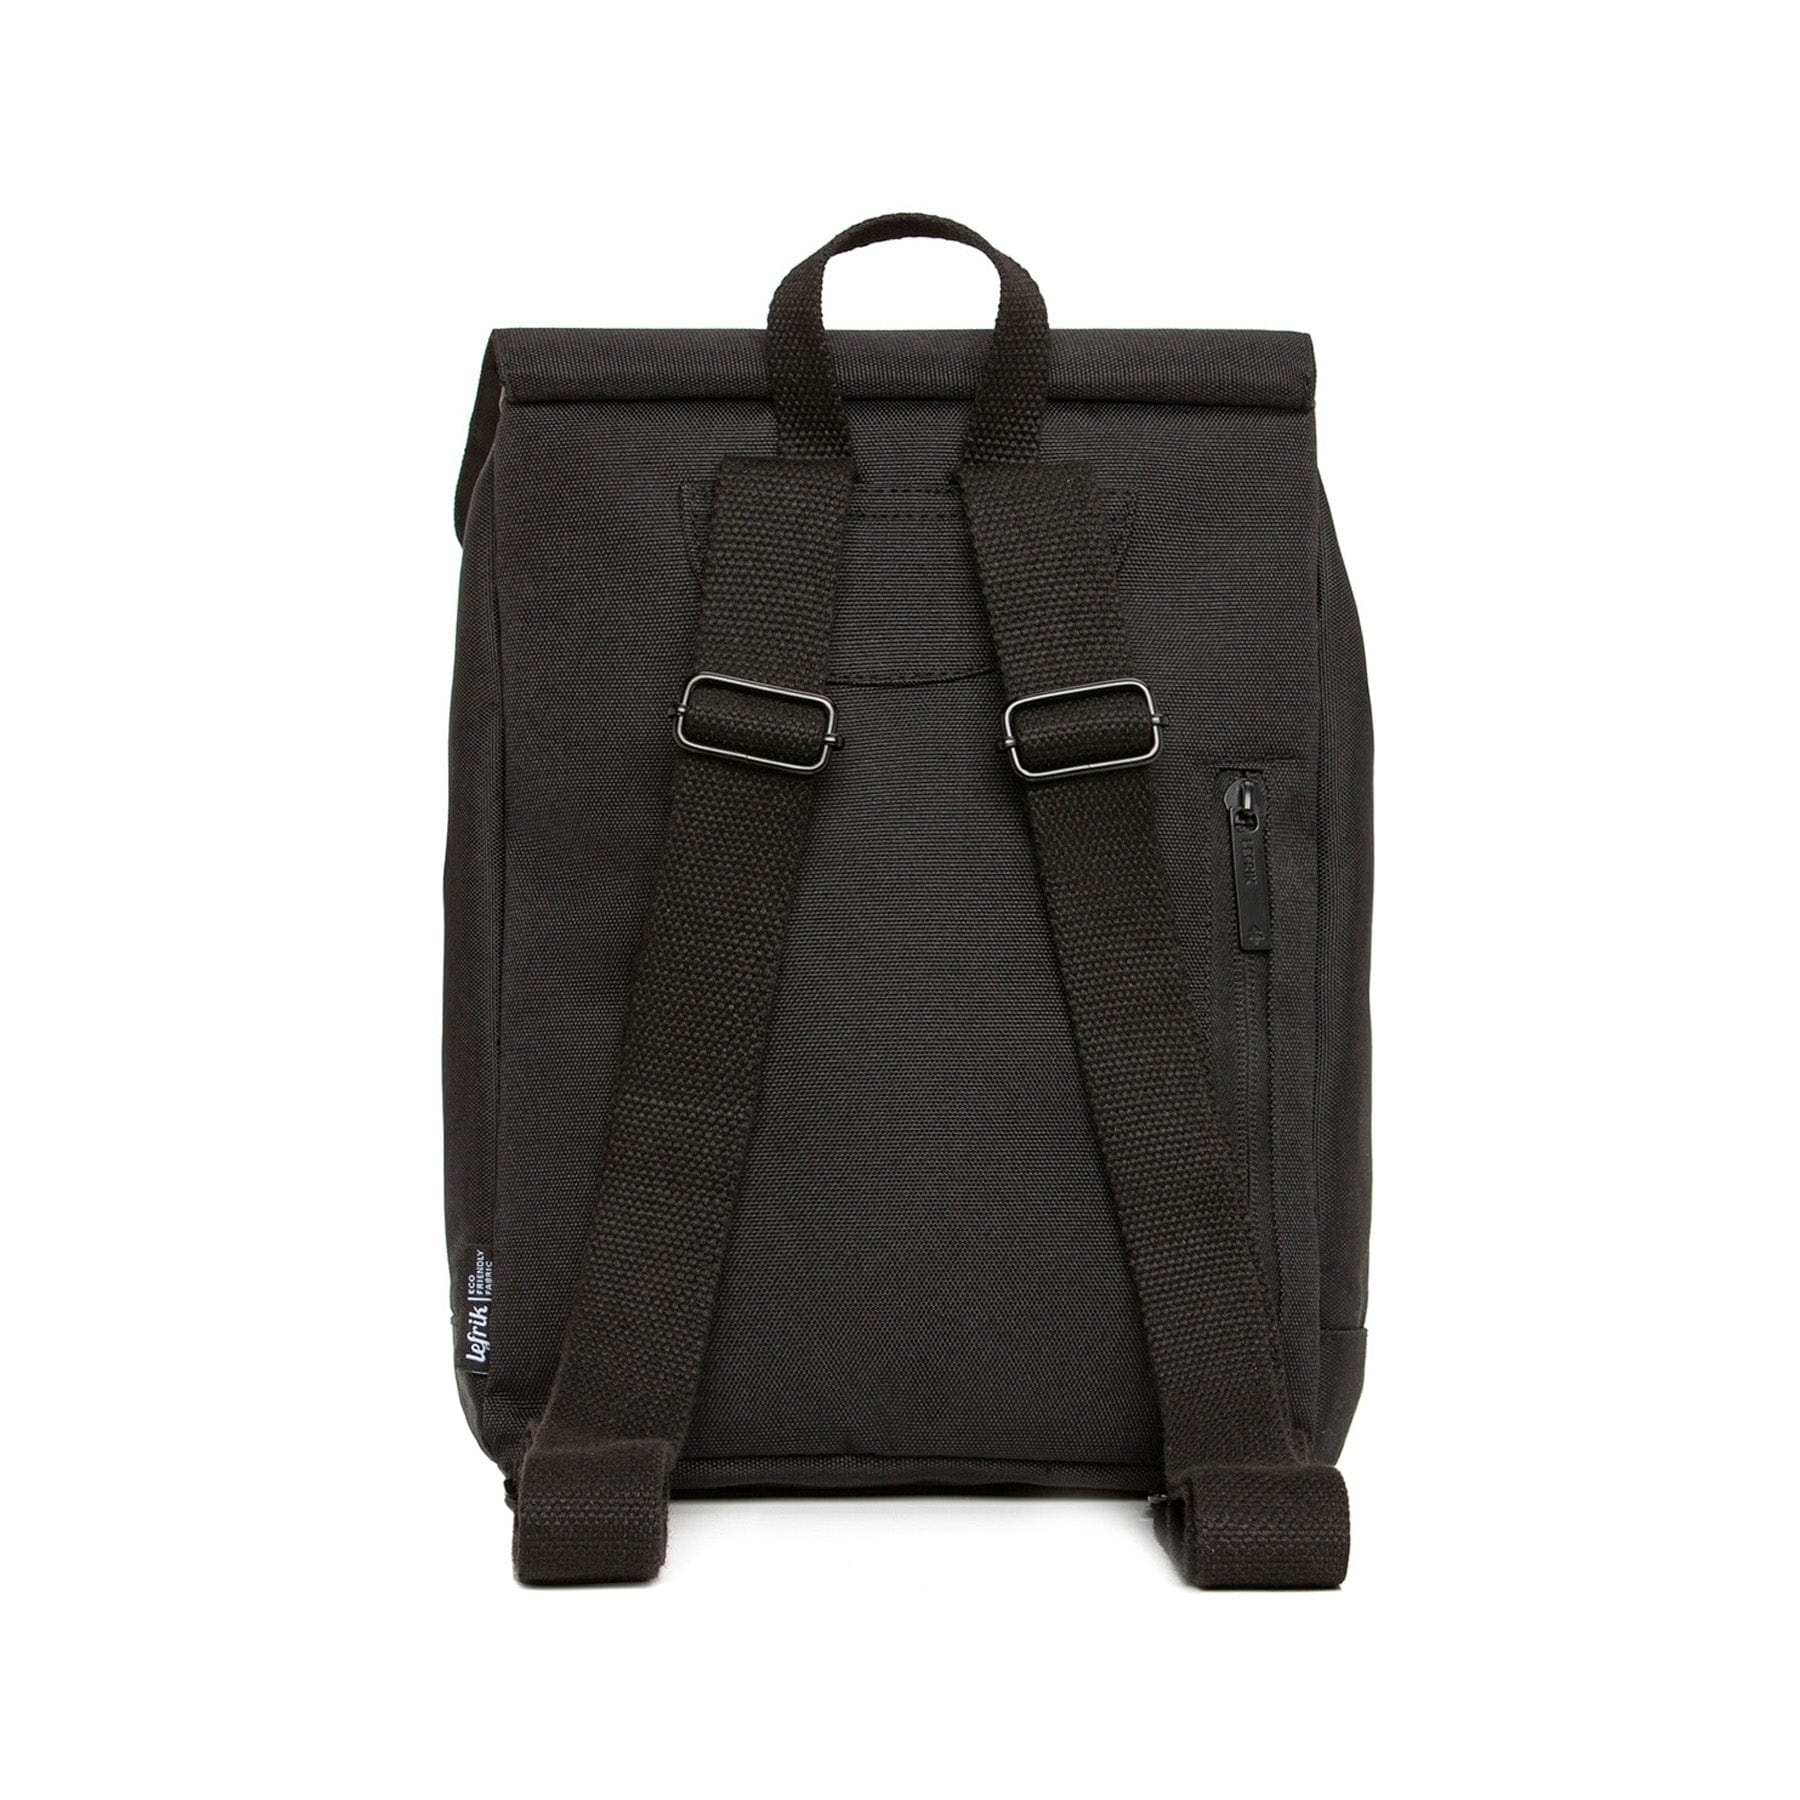 Roll top mini backpack black